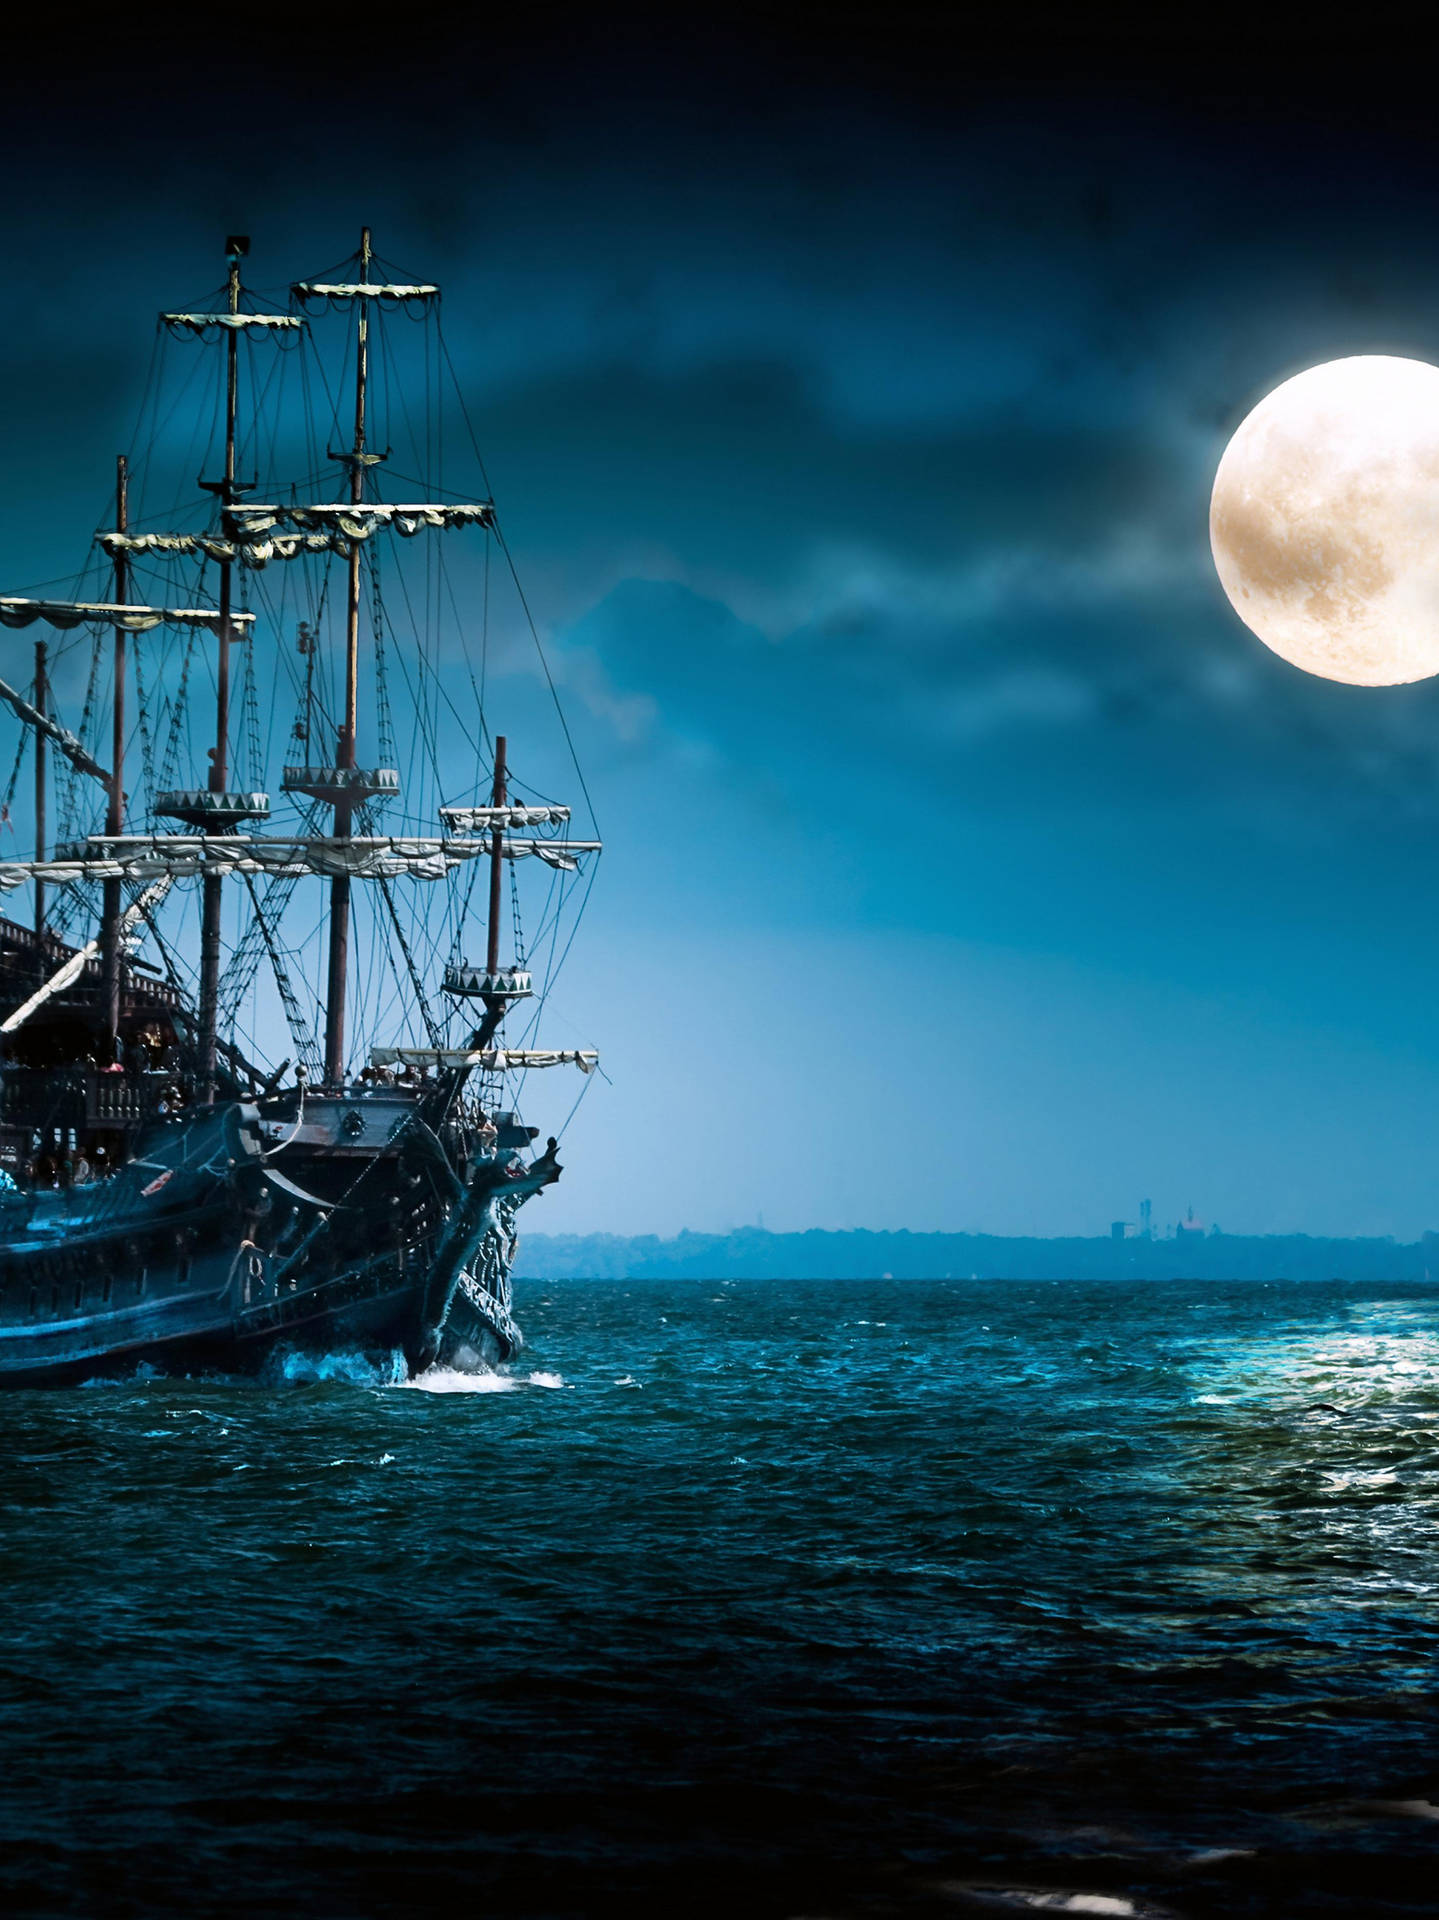 Sailing Ship And Moon